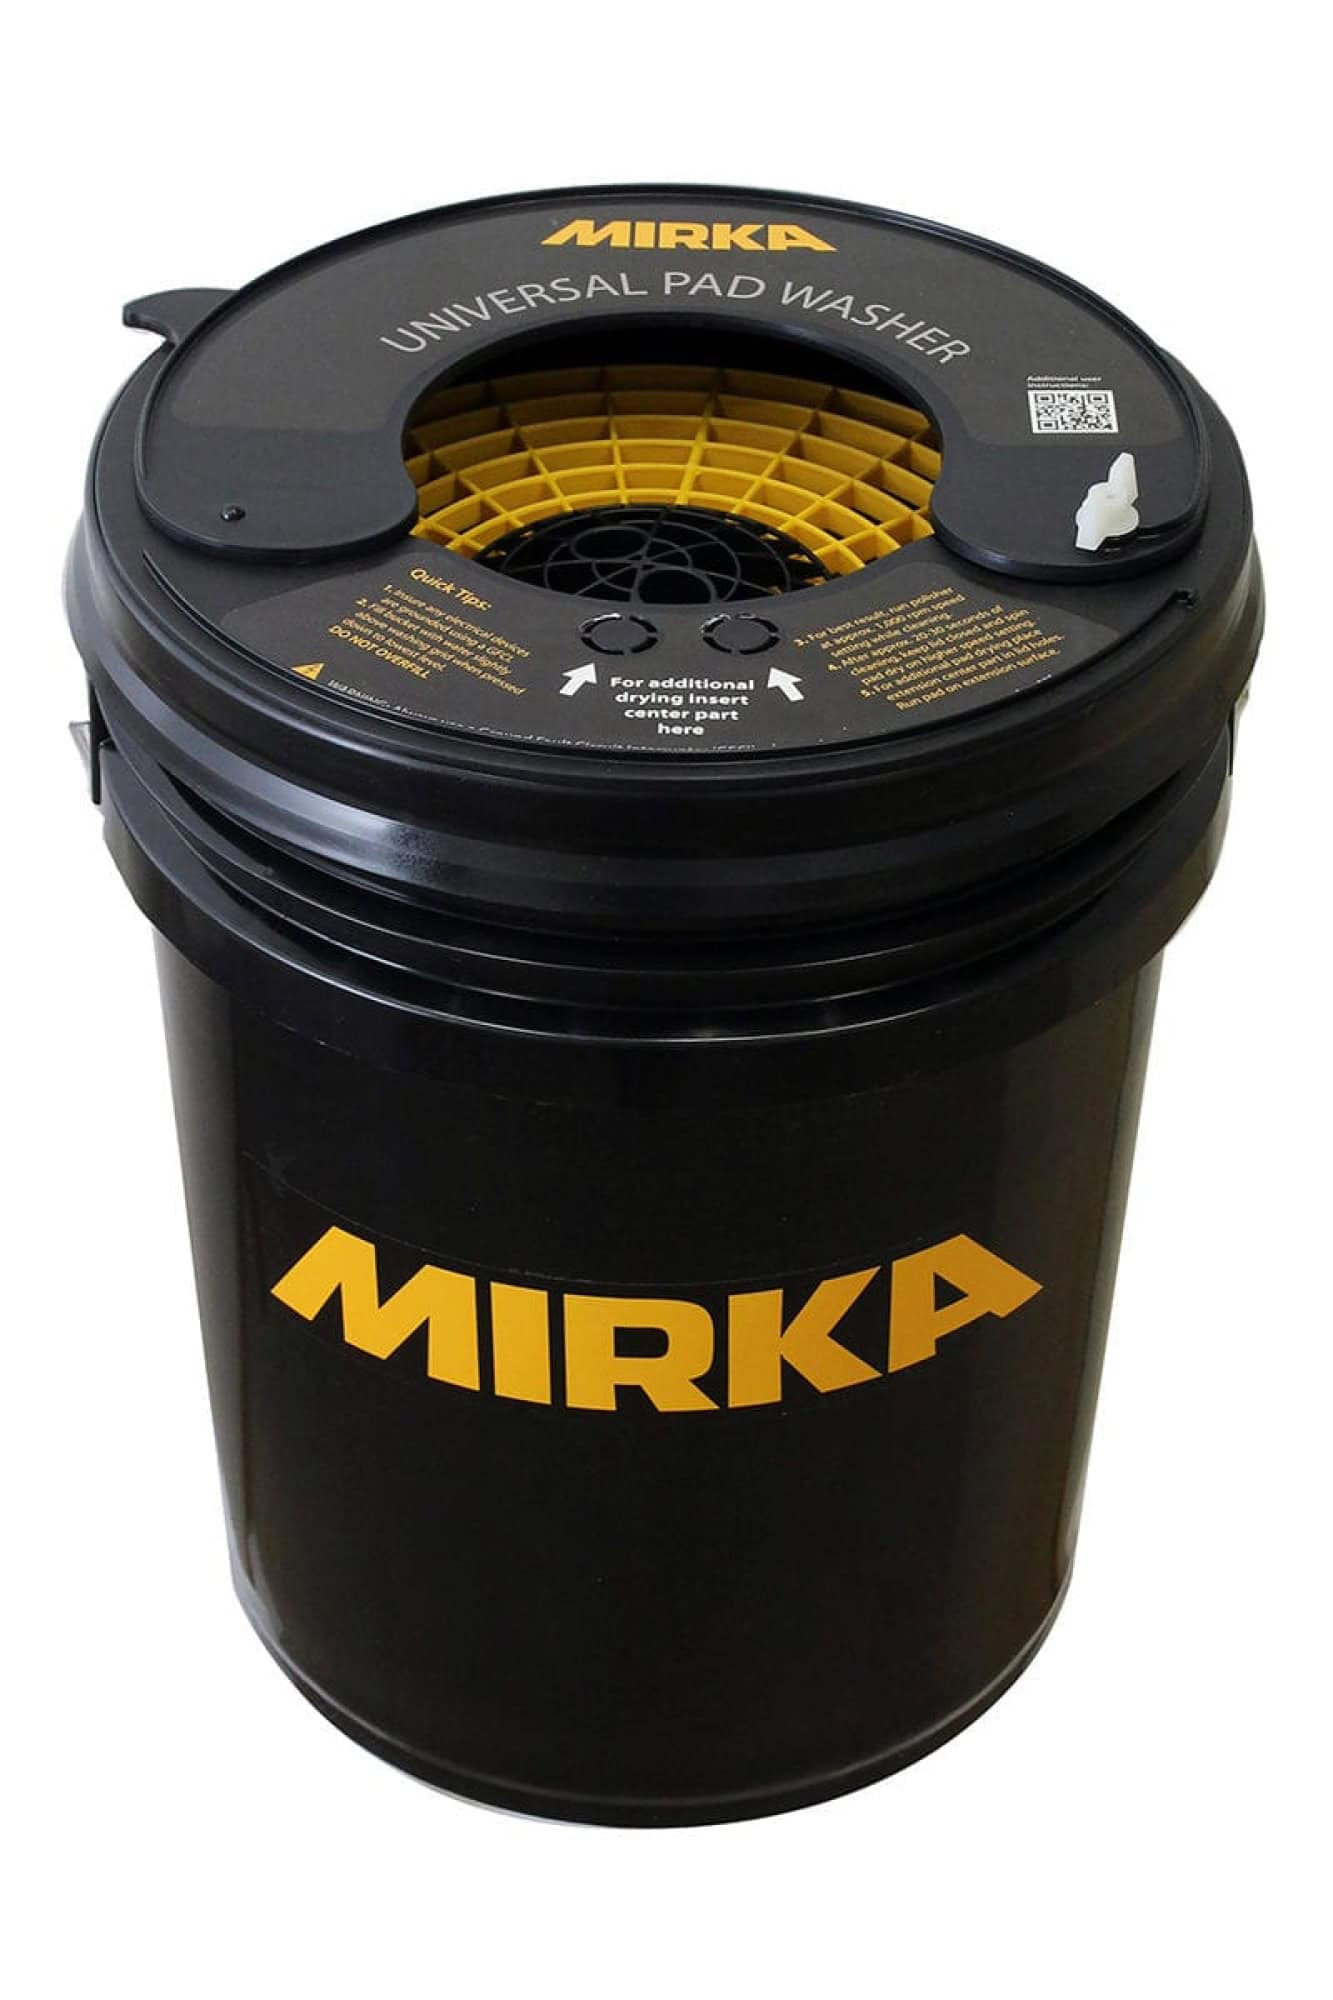 Mirka® Polarshine 9195000111, Pad Washer zum problemlosen Reinigen von allen Mirka® Polier- und Schaumstoffpads